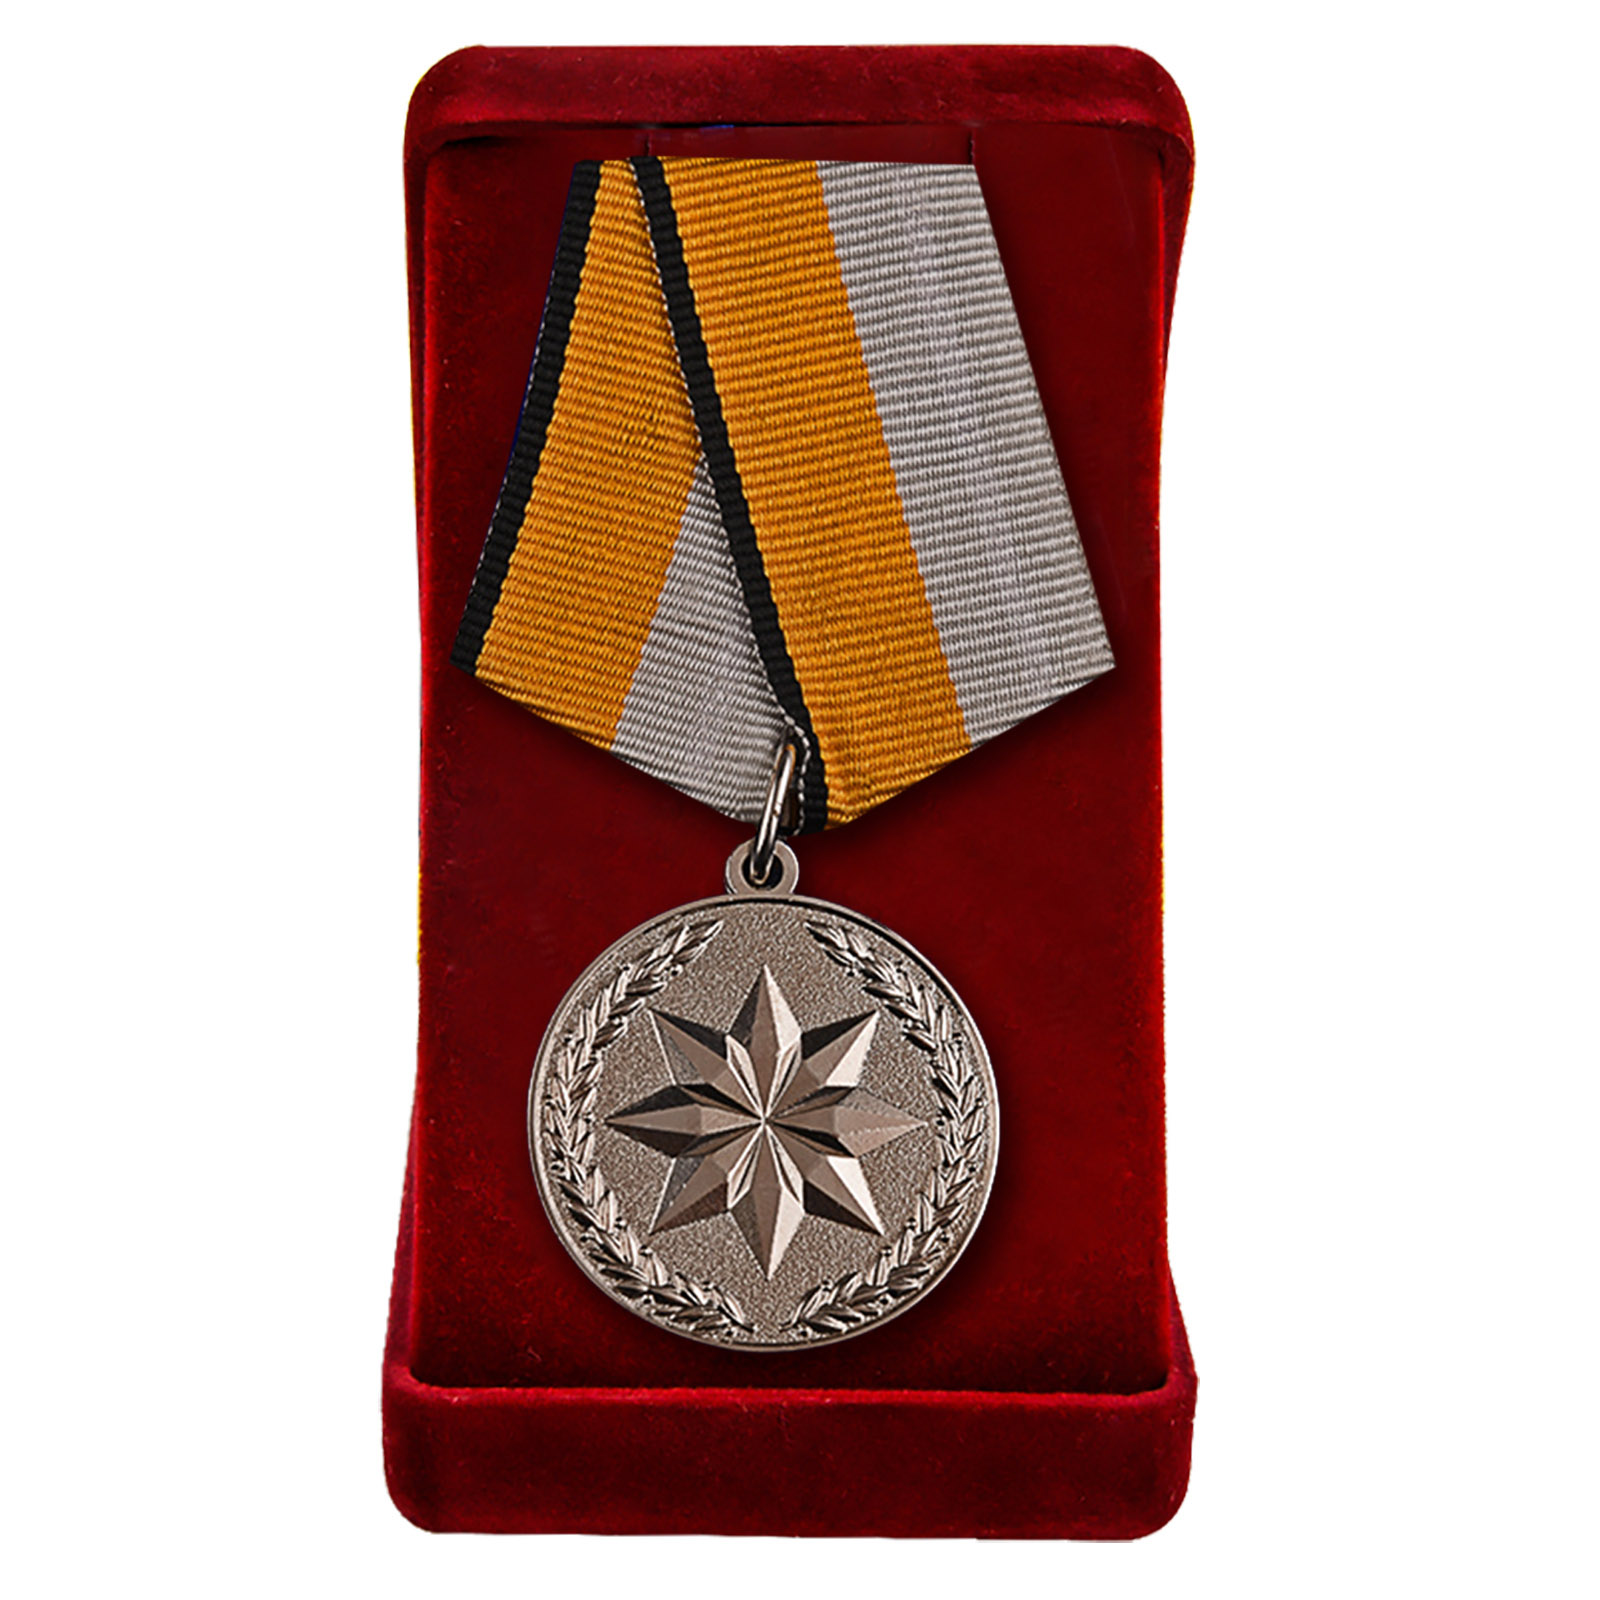 Медаль "За достижения в развитии инновационных технологий" в футляре